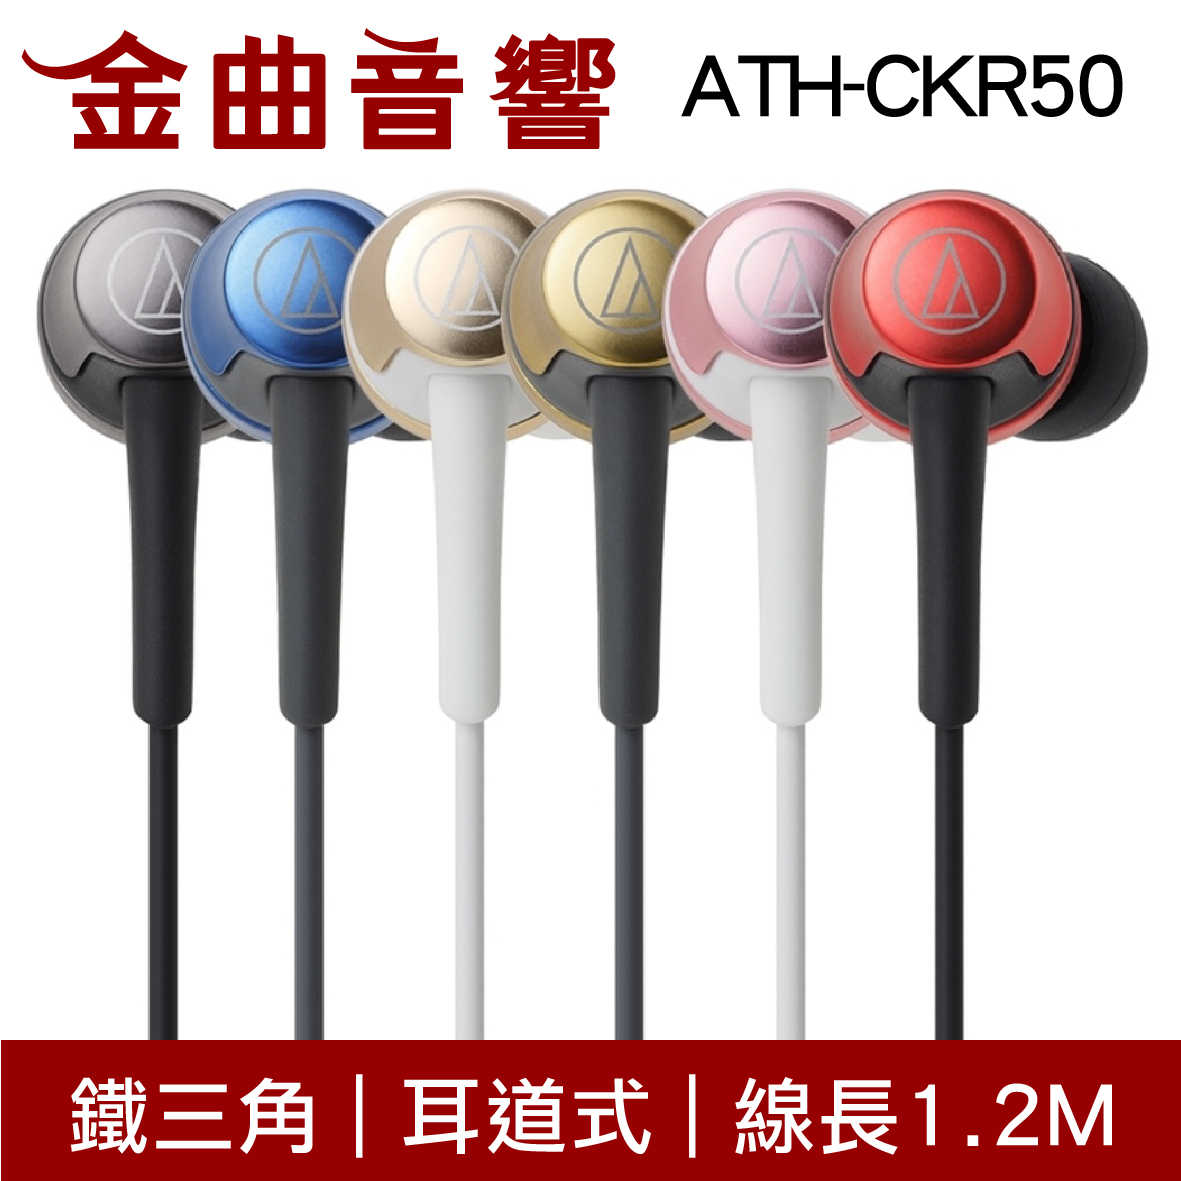 鐵三角 ATH-CKR50 黑色 耳道式耳機 | 金曲音響